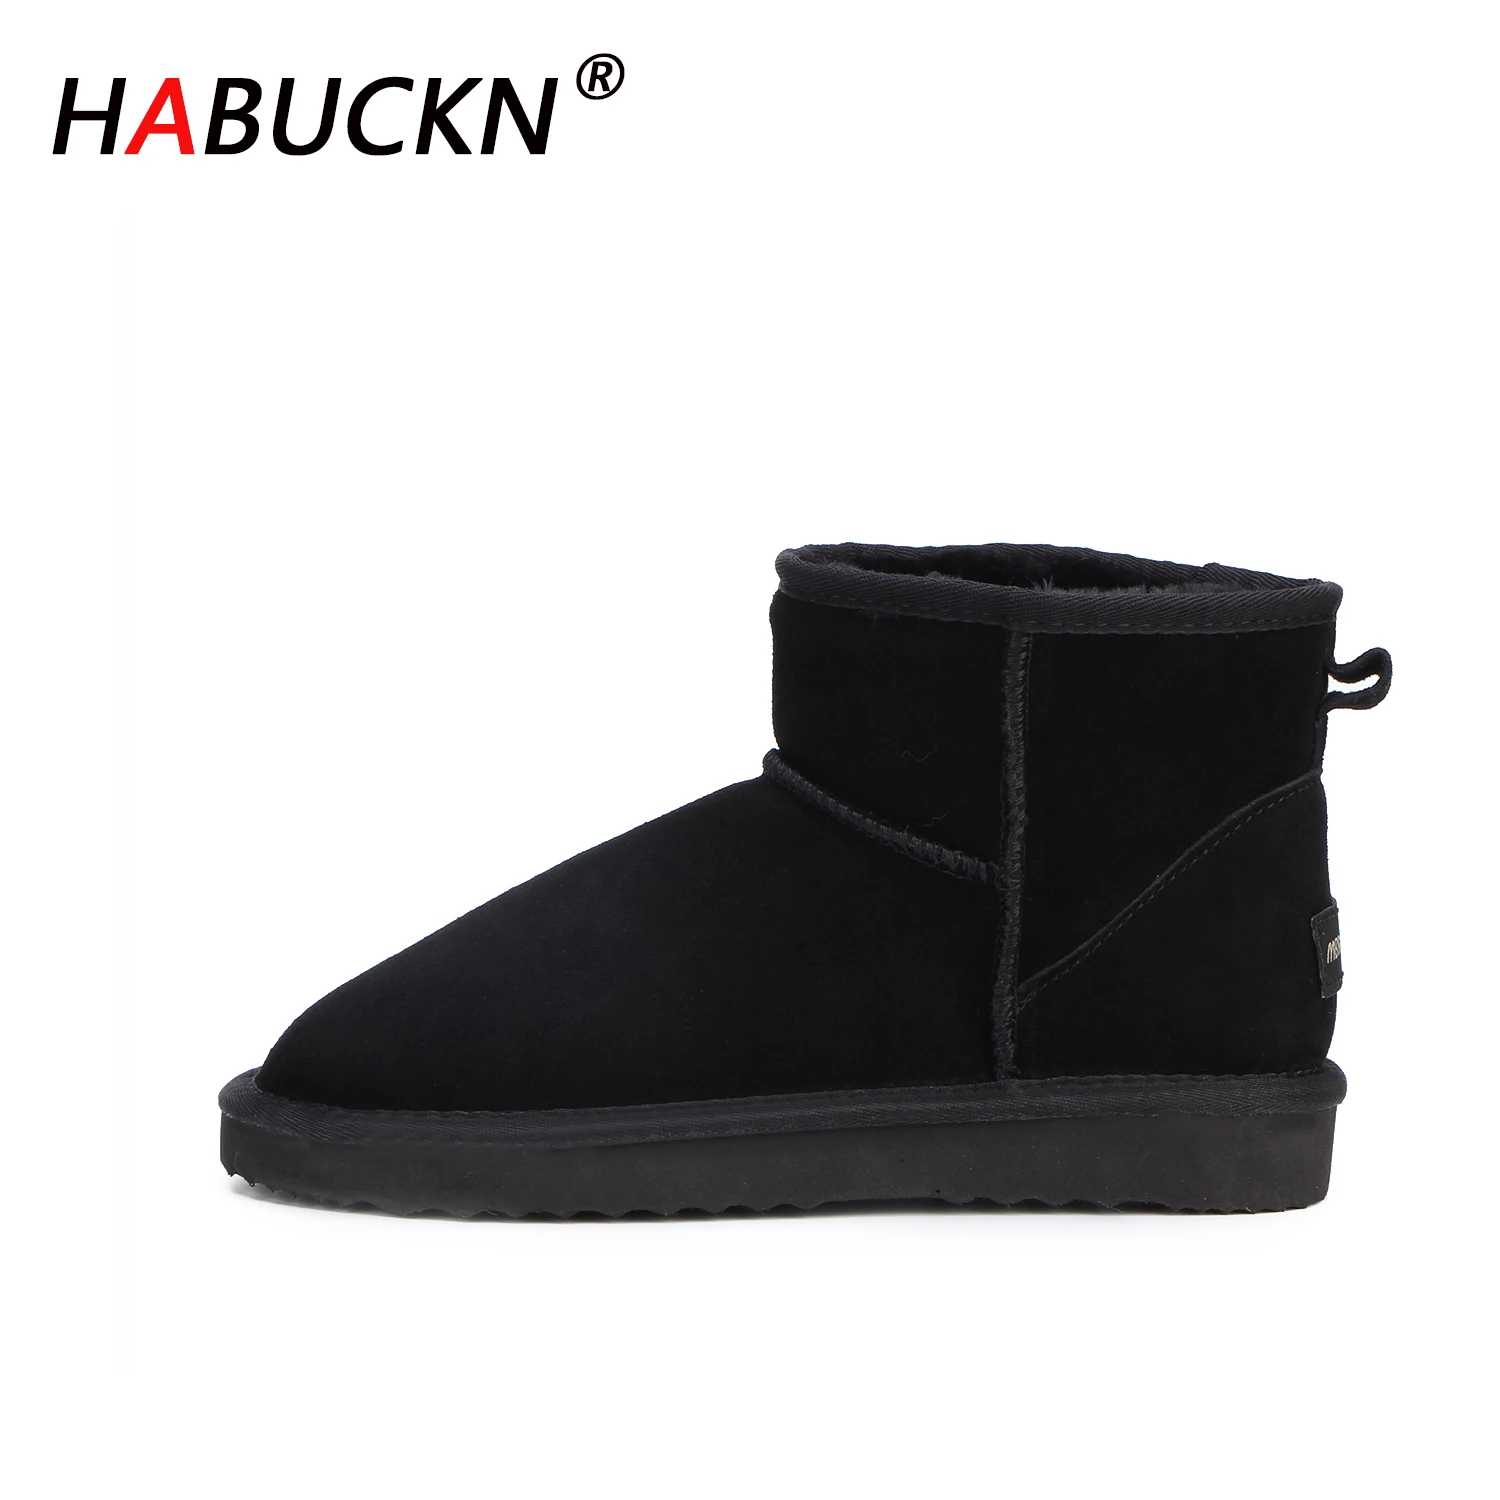 

Новые австралийские Модные женские зимние ботинки HABUCKN 100% австралийские ботильоны из натуральной воловьей кожи, теплые зимние ботинки, жен...